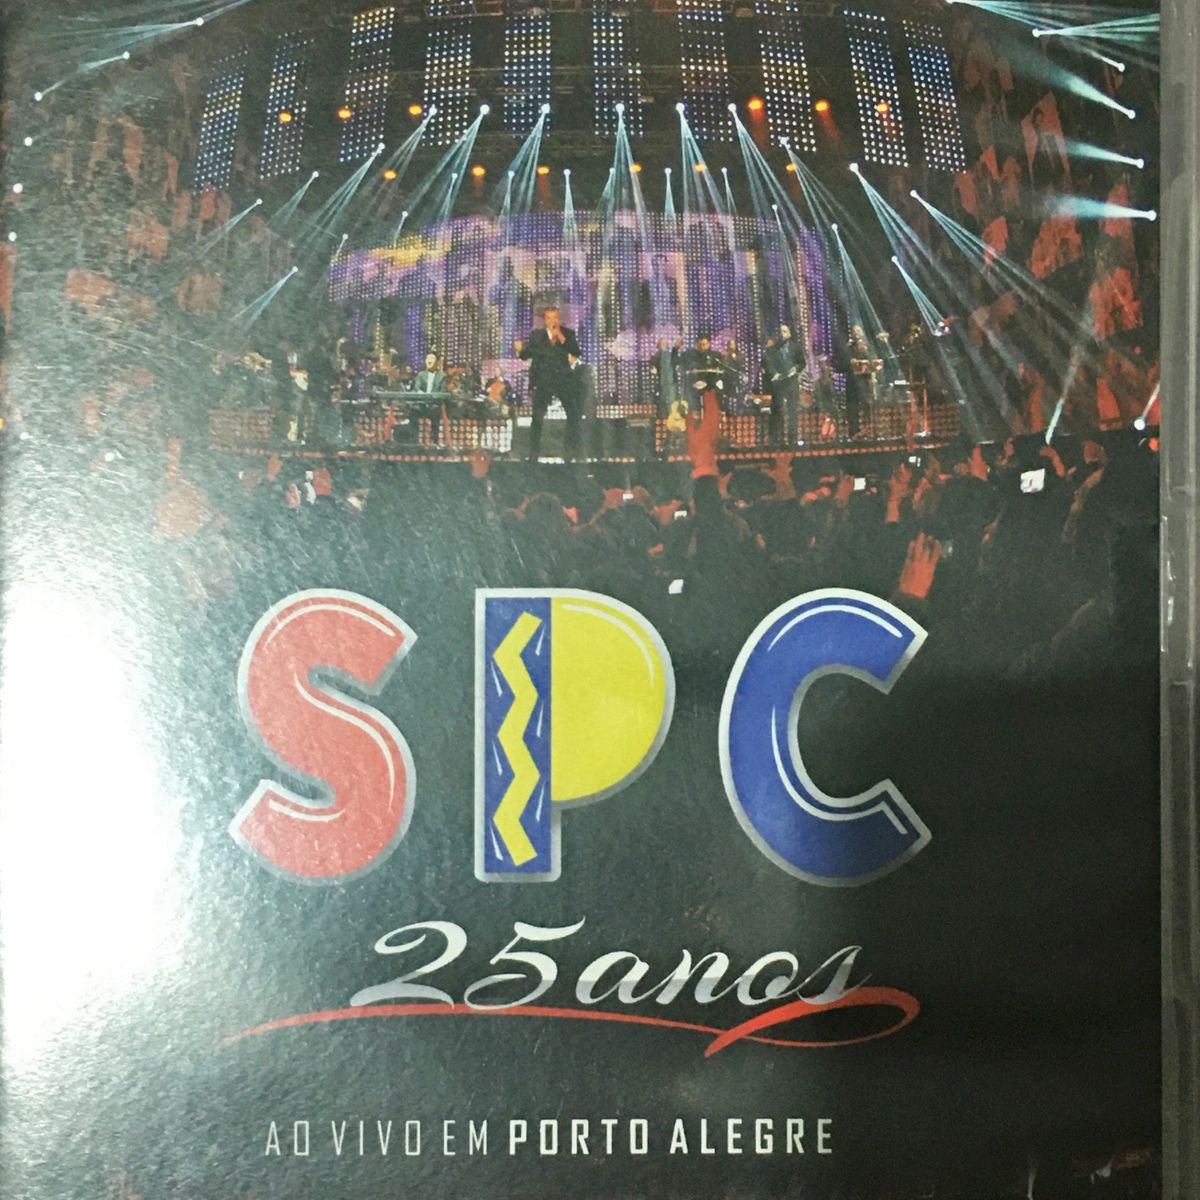 CD PROMOCIONAL SPC - 25 ANOS AO VIVO EM PORTO ALEGRE VOL 01